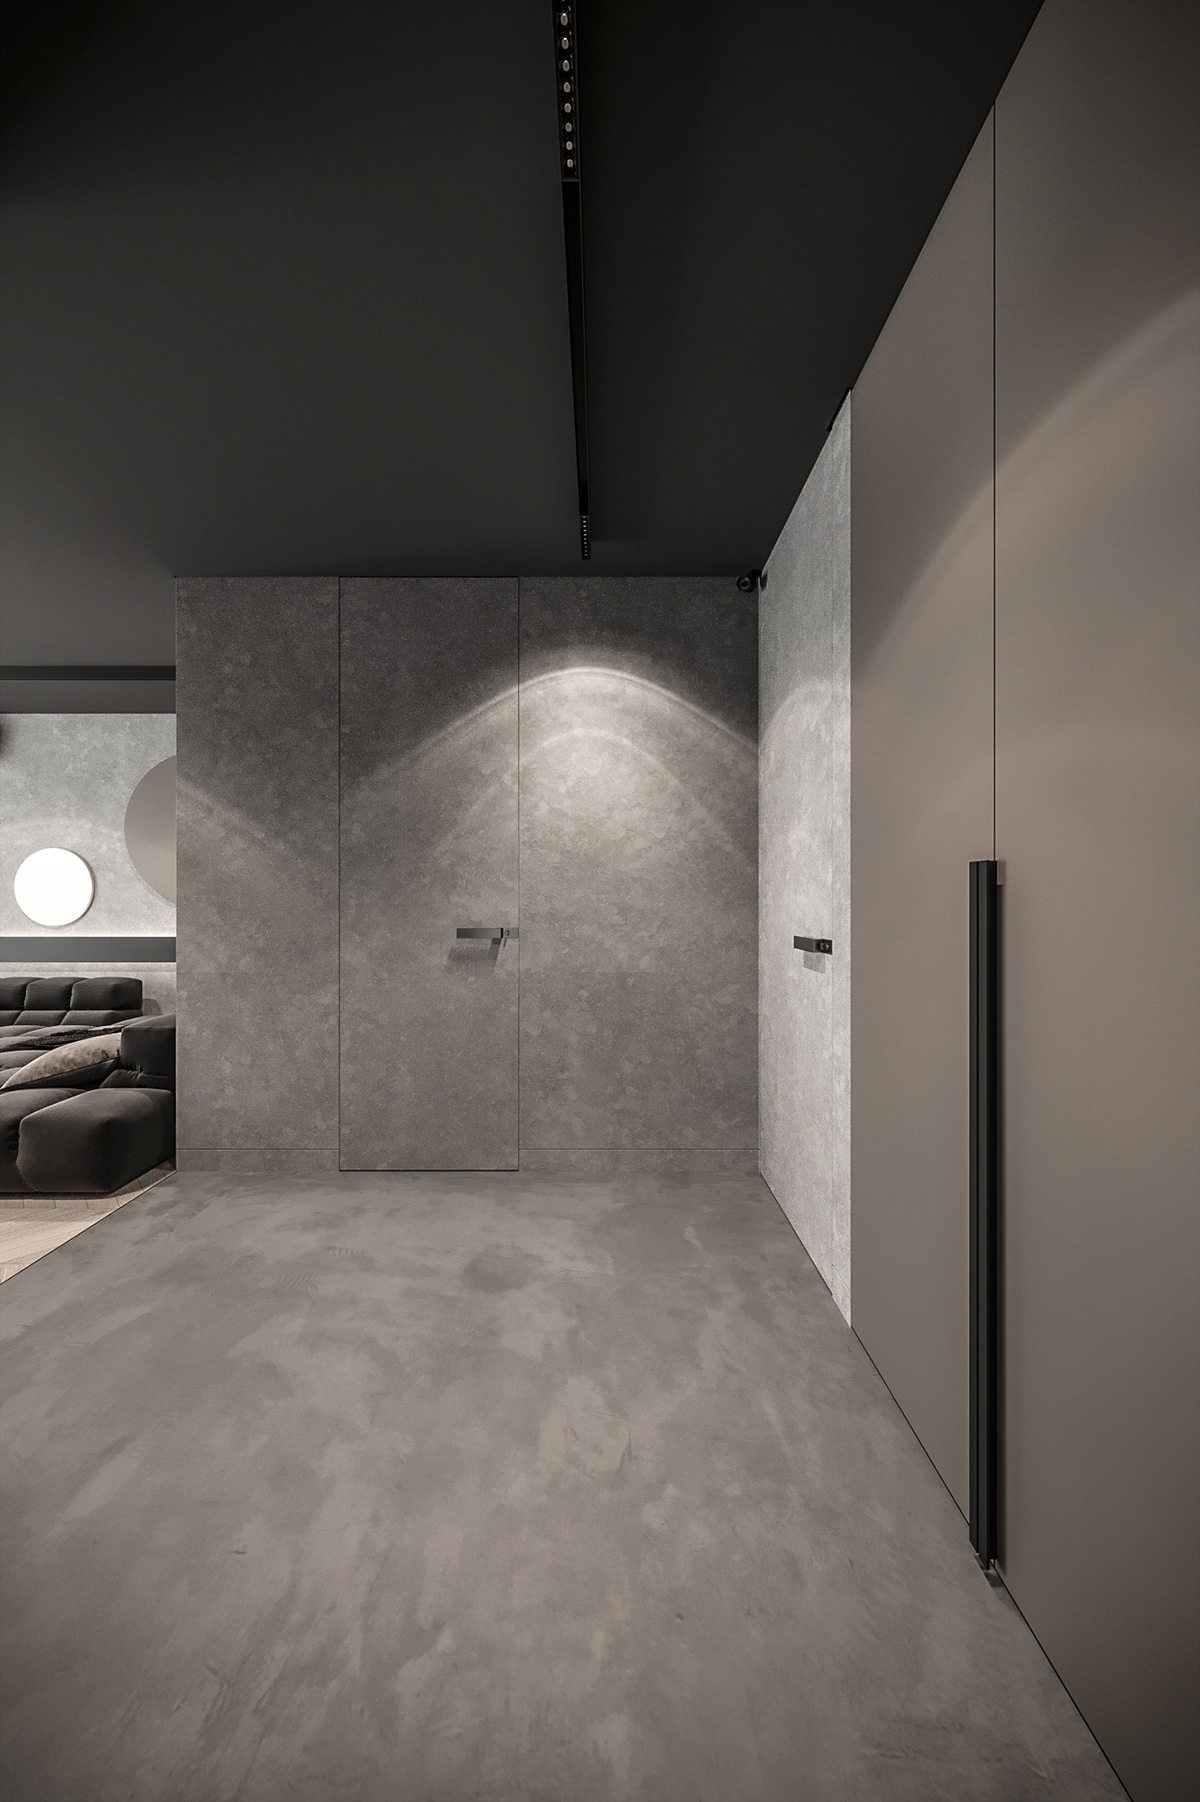 apartment architecture dark Interior kitchen living room luxury minimal modern